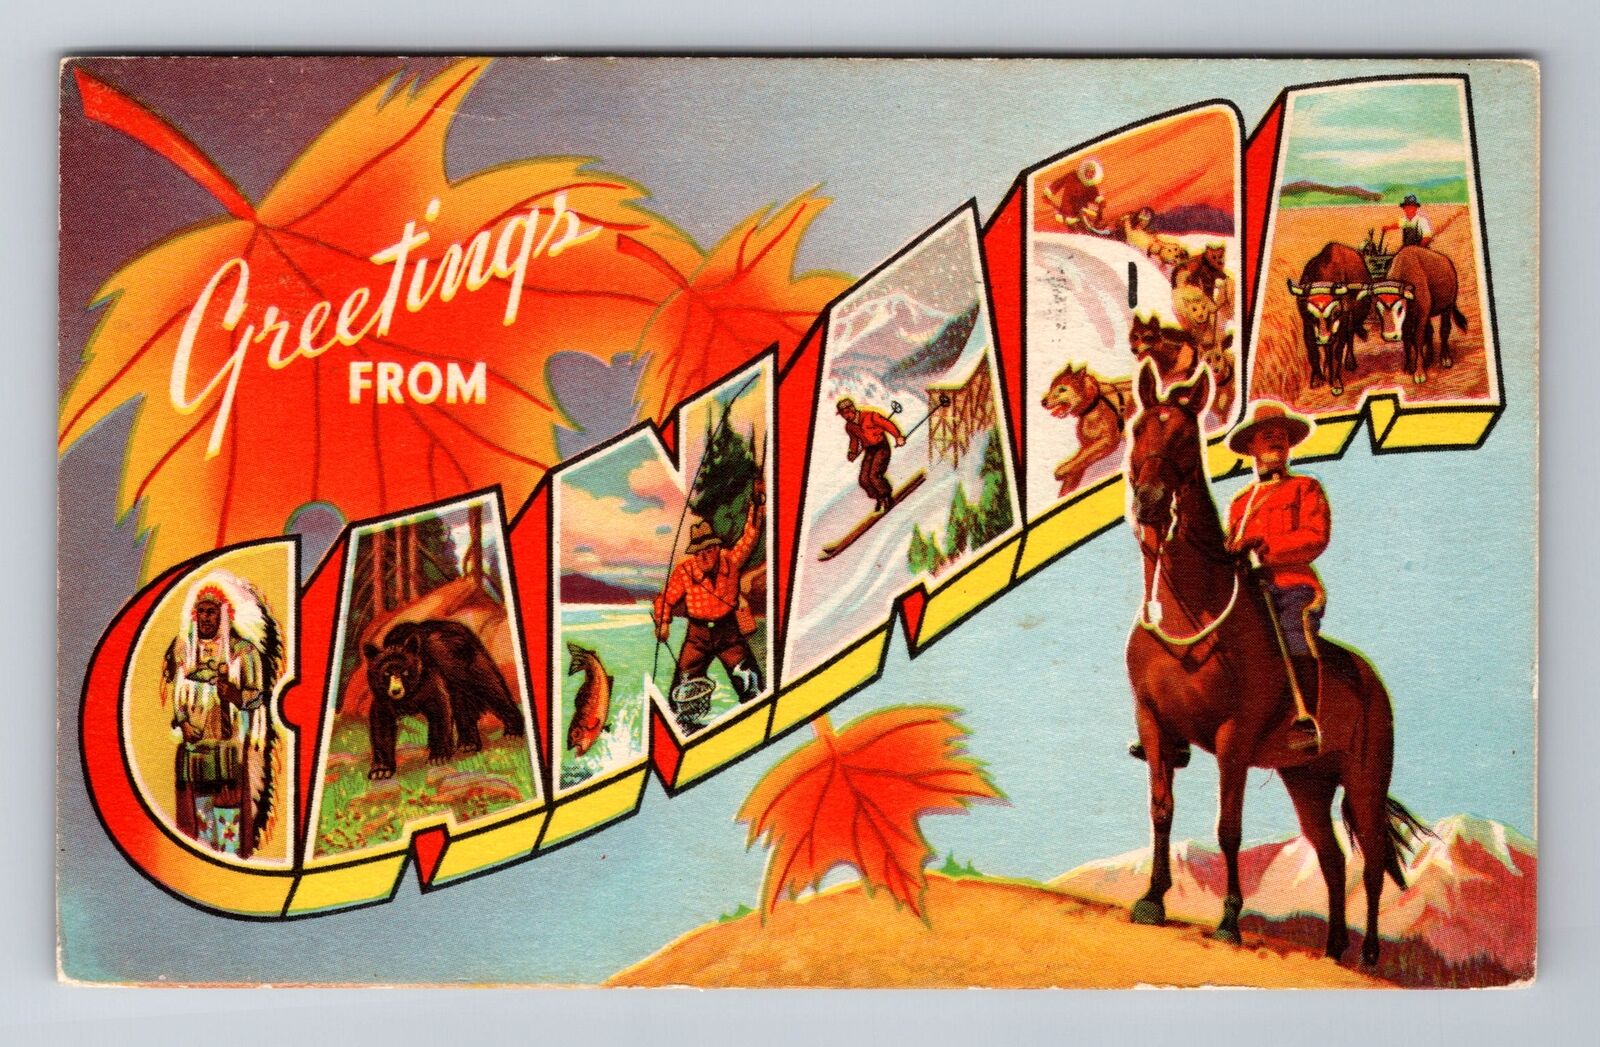 Canada, General Large Letter Greetings, Antique c1956 Vintage Souvenir Postcard